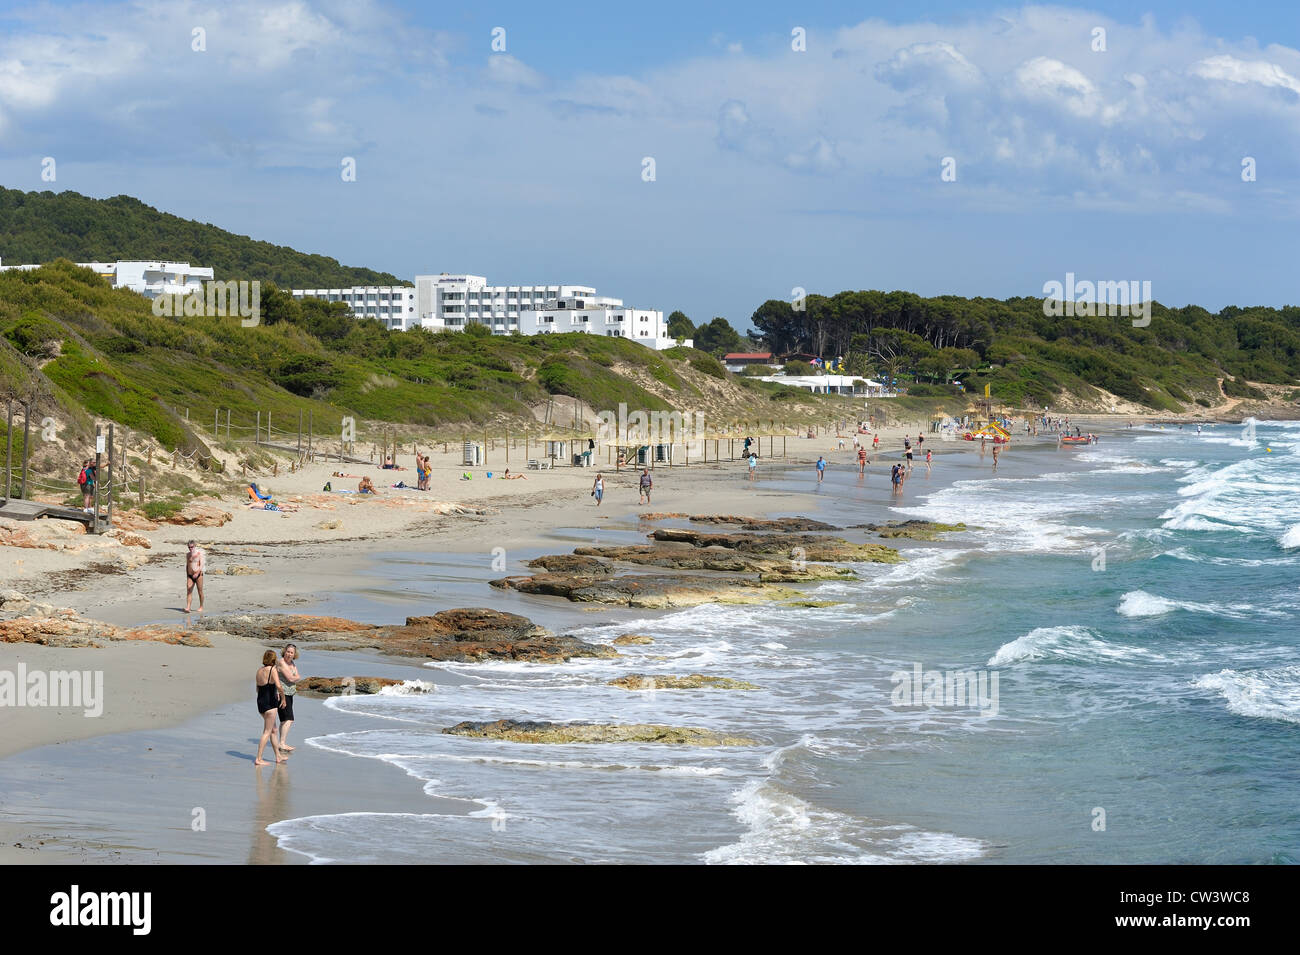 Spiaggia di Santo Tomas Minorca spagna con l'hotel victoria playa nel telaio superiore dell'immagine Foto Stock